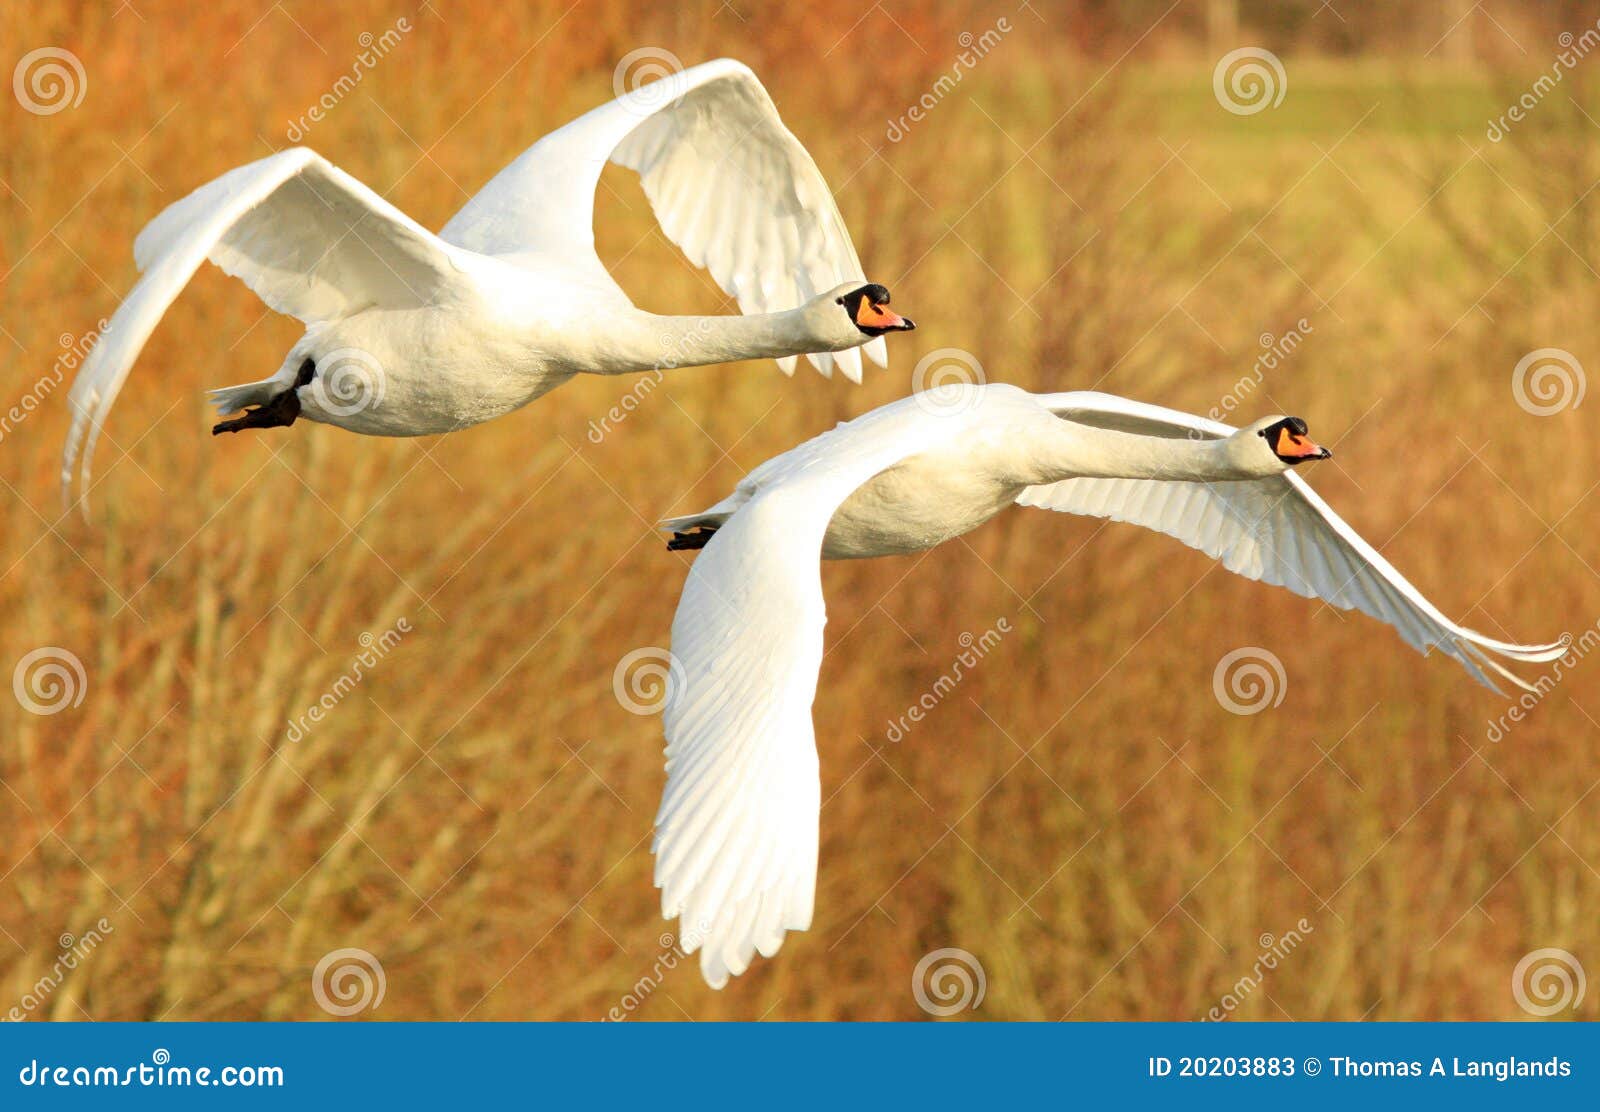 mute swans in flight